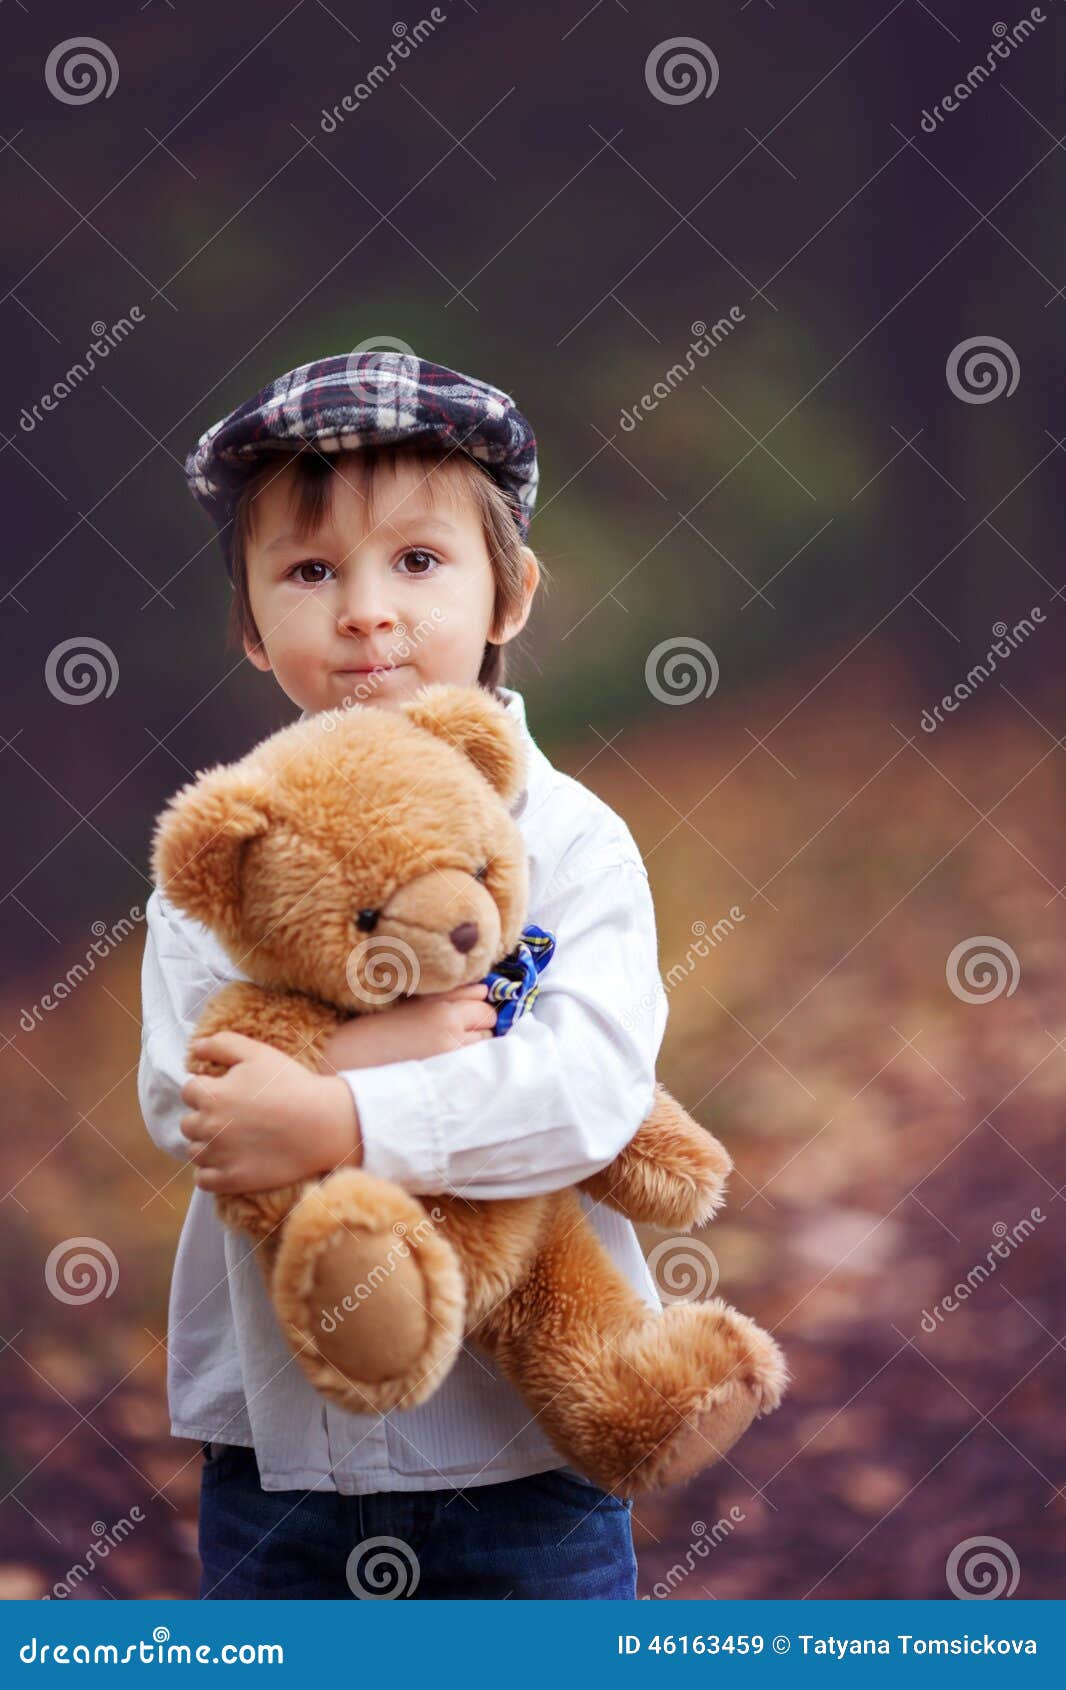 Плюшевый мальчик. Мальчик с мишкой. Мальчик с медвежонком. Мальчик с плюшевым мишкой. Детская фотосессия с мягкими игрушками.